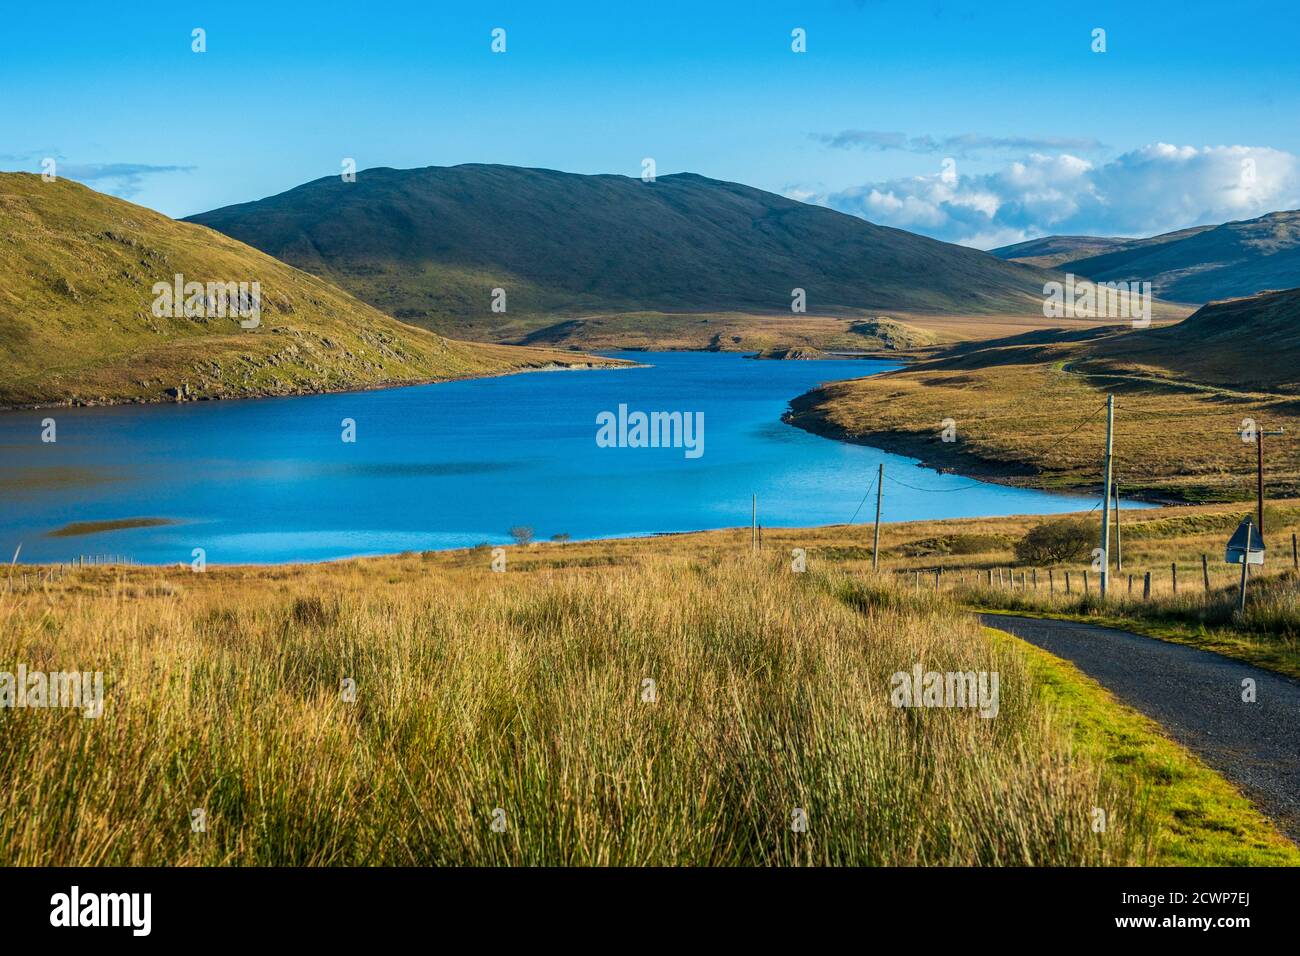 Il lago artificiale di Nant-y-moch, situato nelle montagne Cambriane del Galles centrale, si trova a Ceredigion. Foto Stock